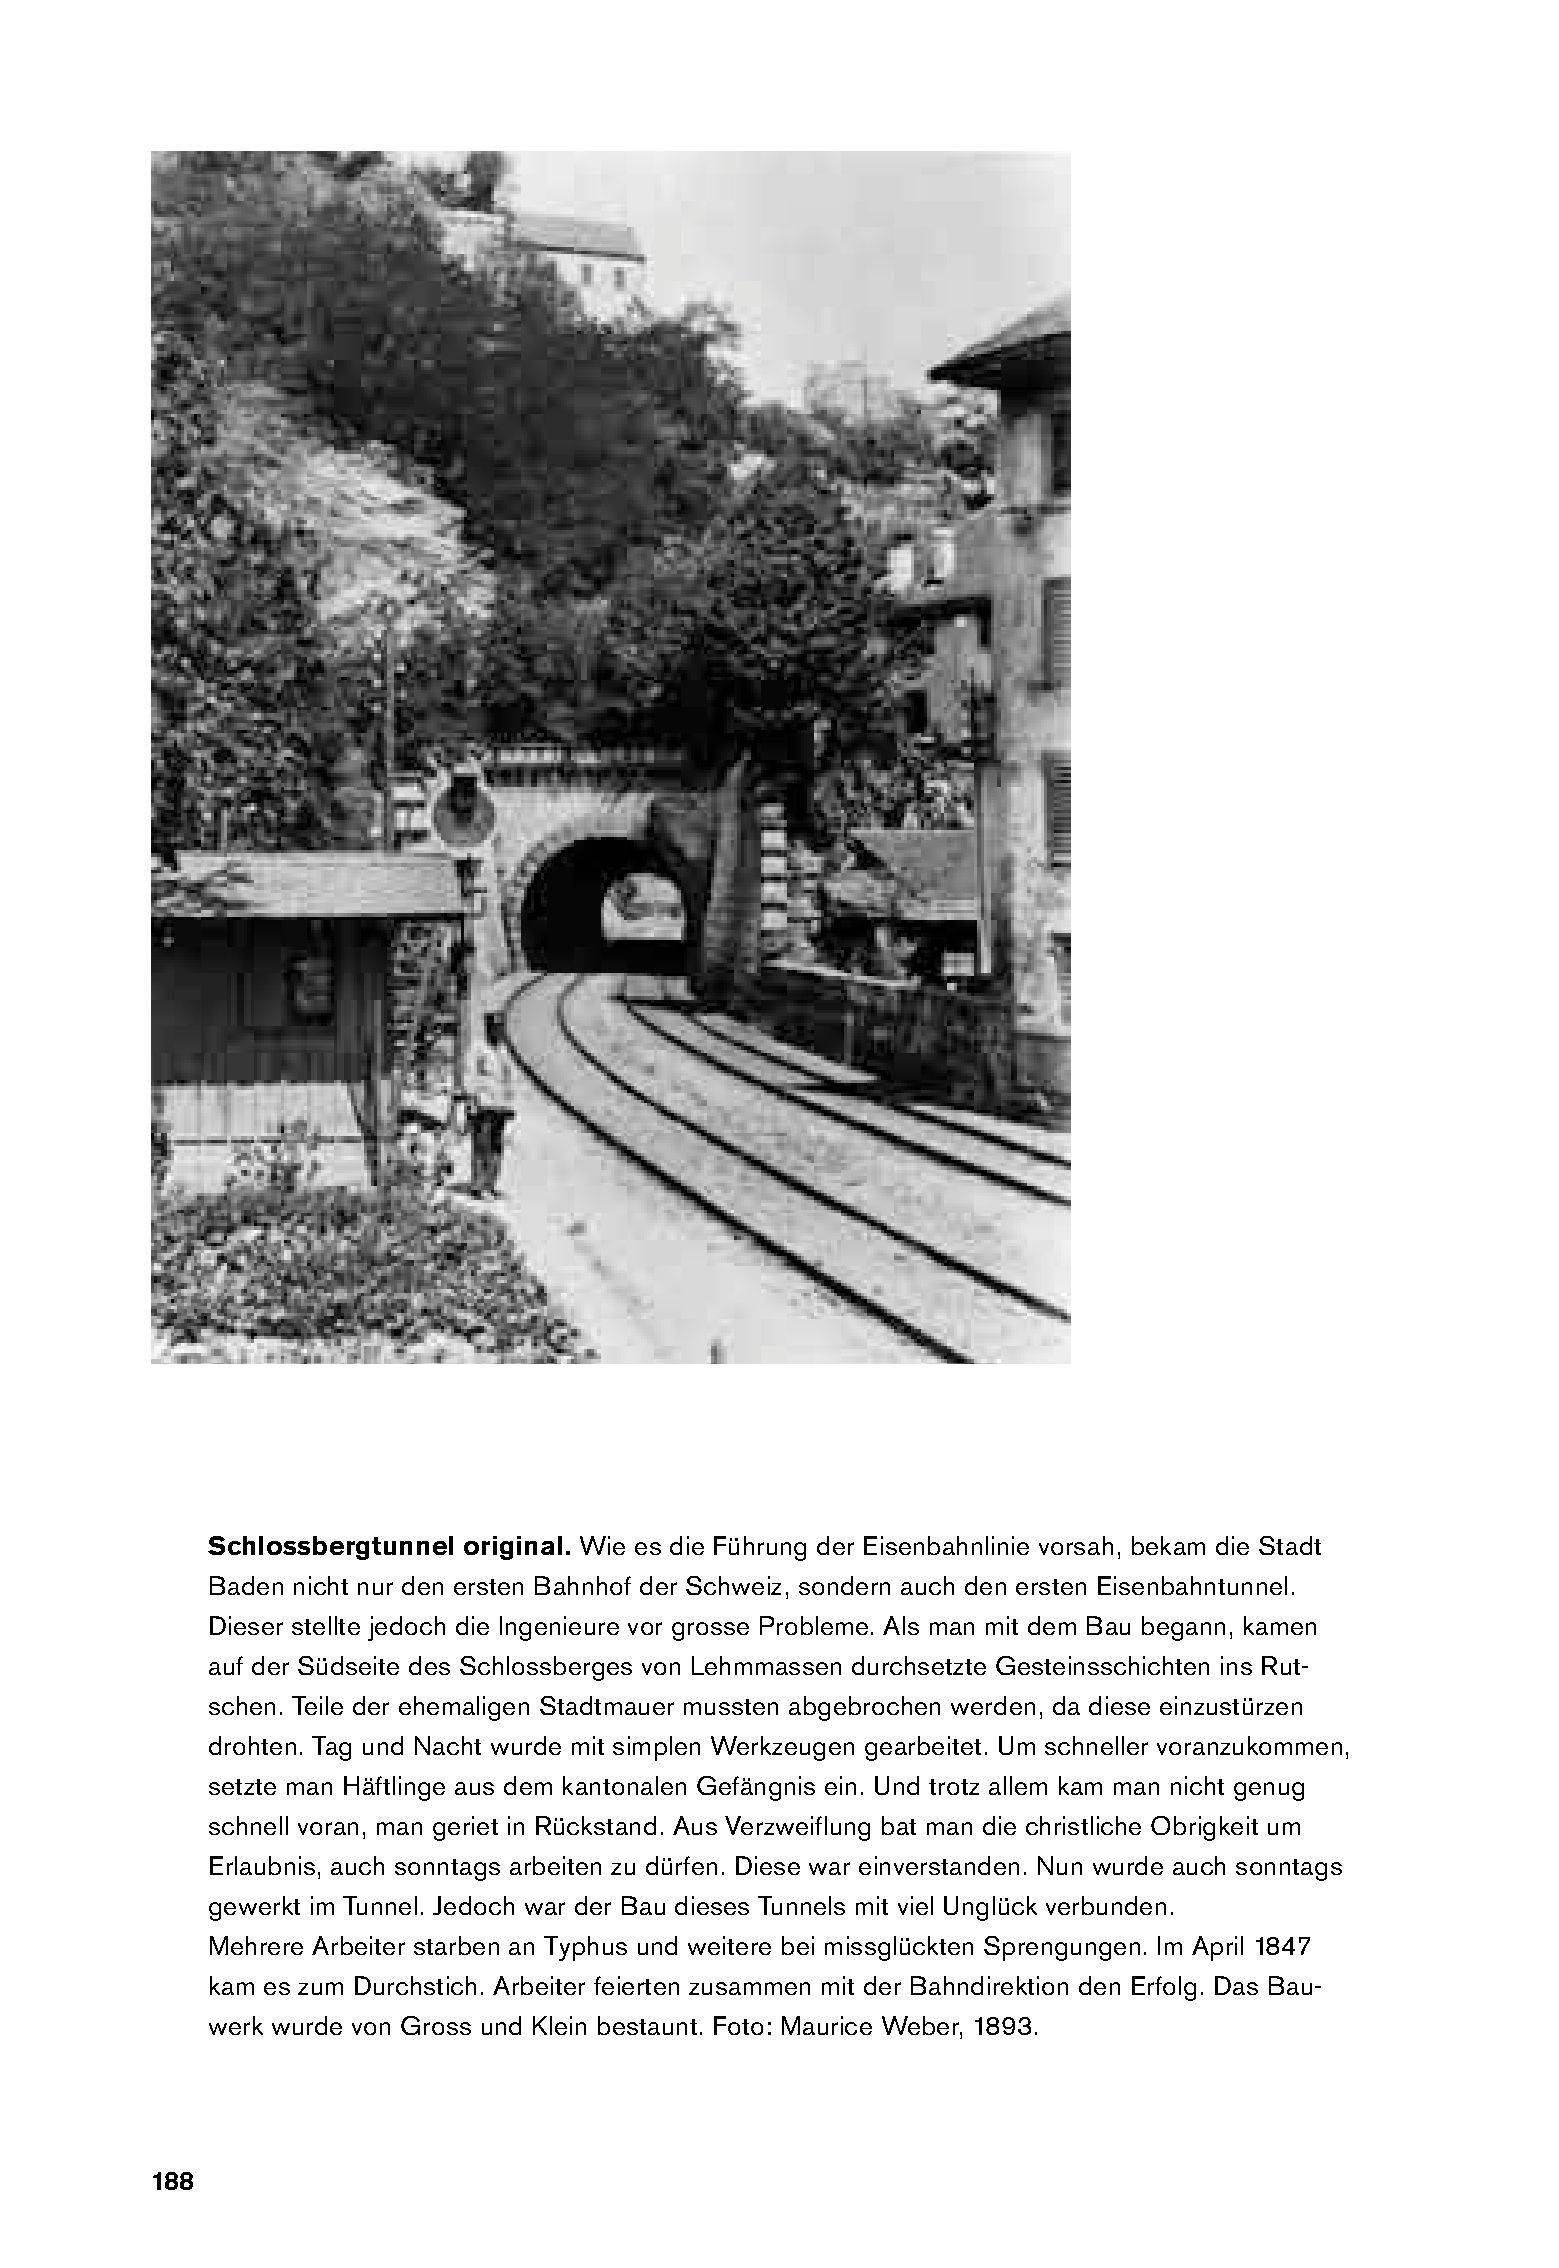 Schlossbergtunnel original. Wie es die Führung der Eisenbahnlinie vorsah, bekam die Stadt Baden nicht nur den ersten Bahnhof der Schweiz, sondern auch den ersten Eisenbahntunnel.